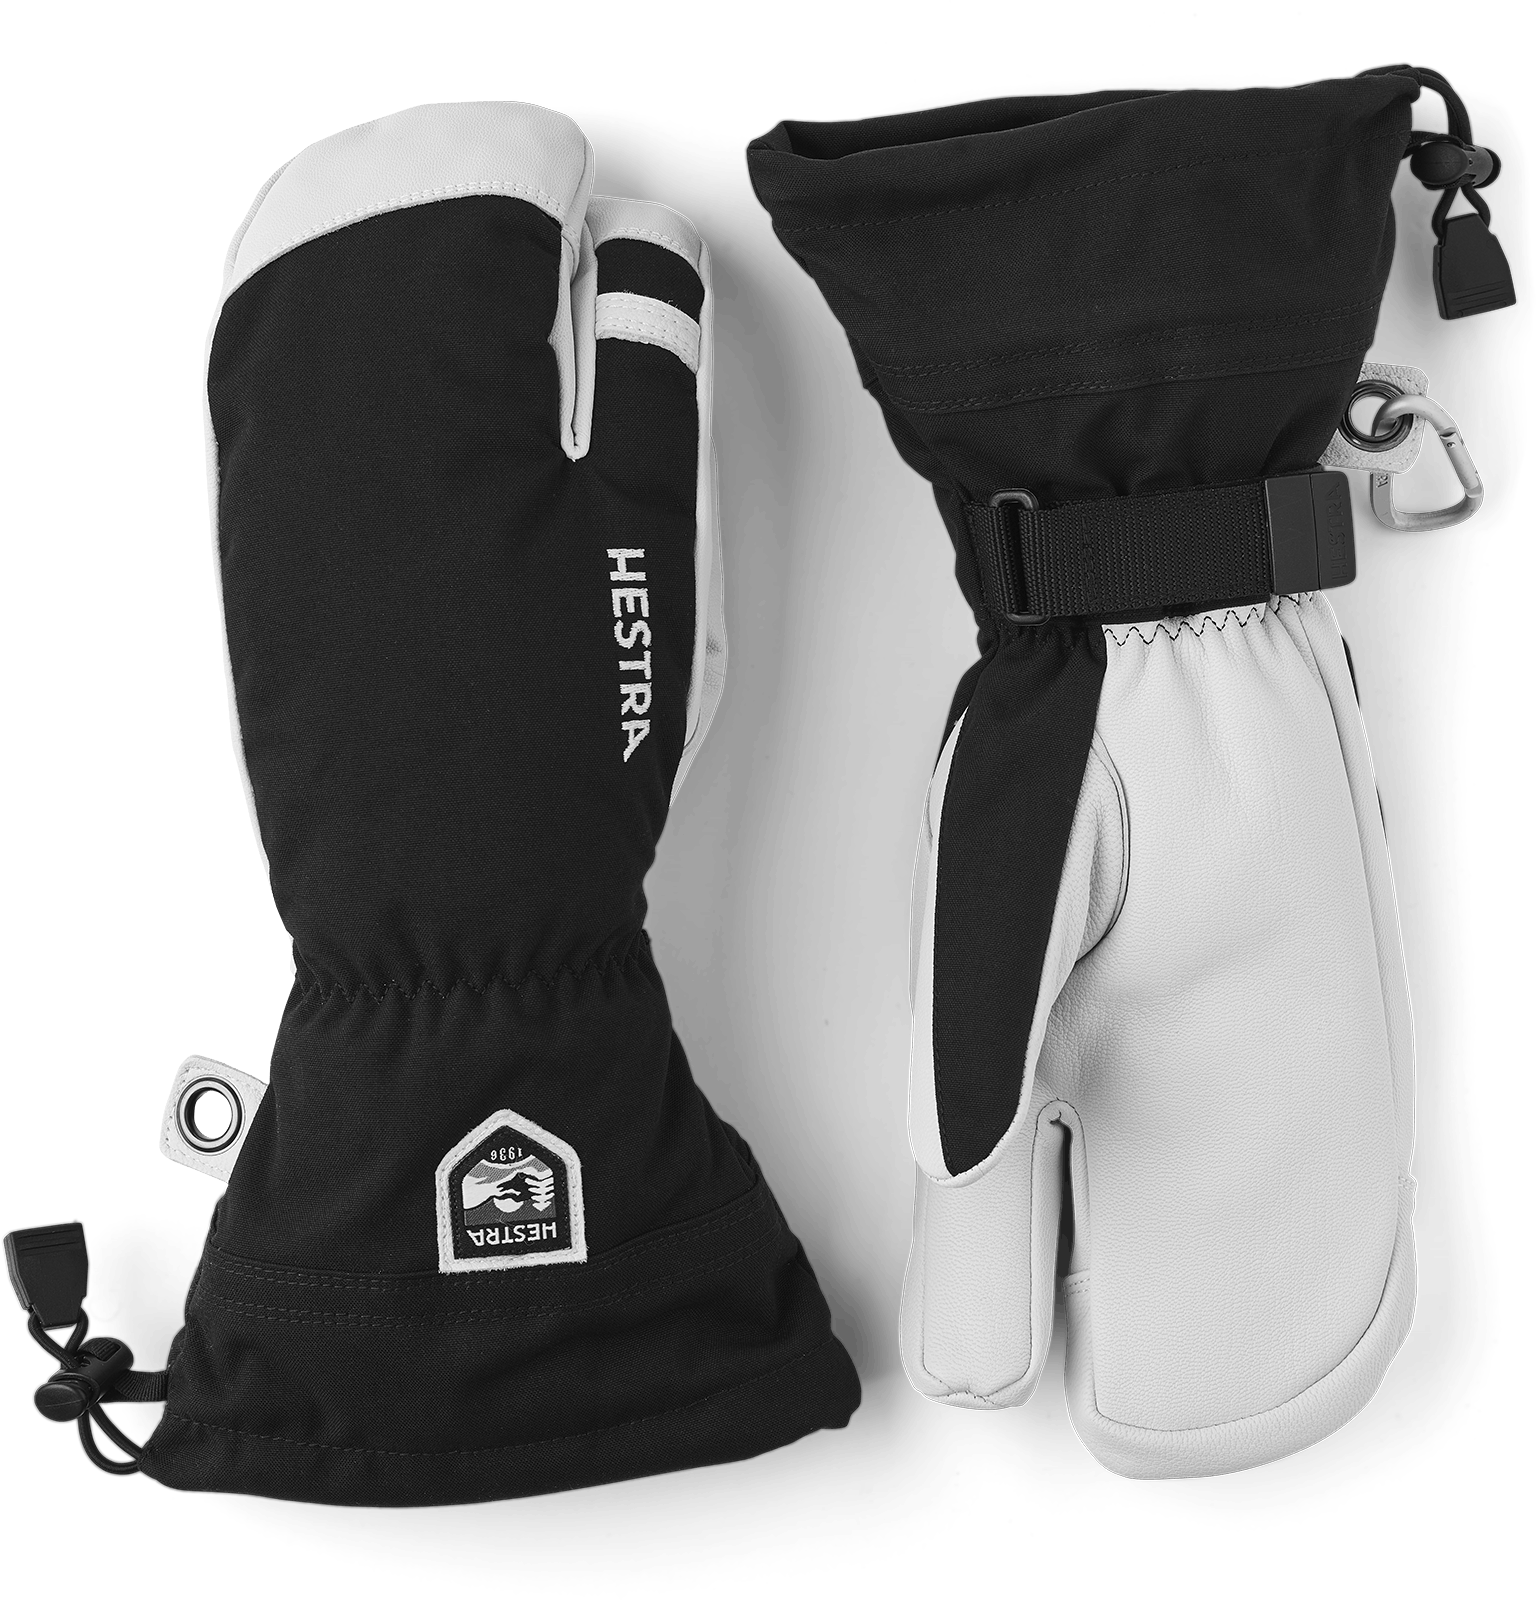 Hestra Men's Army Leather Heli Ski 3-finger Gloves